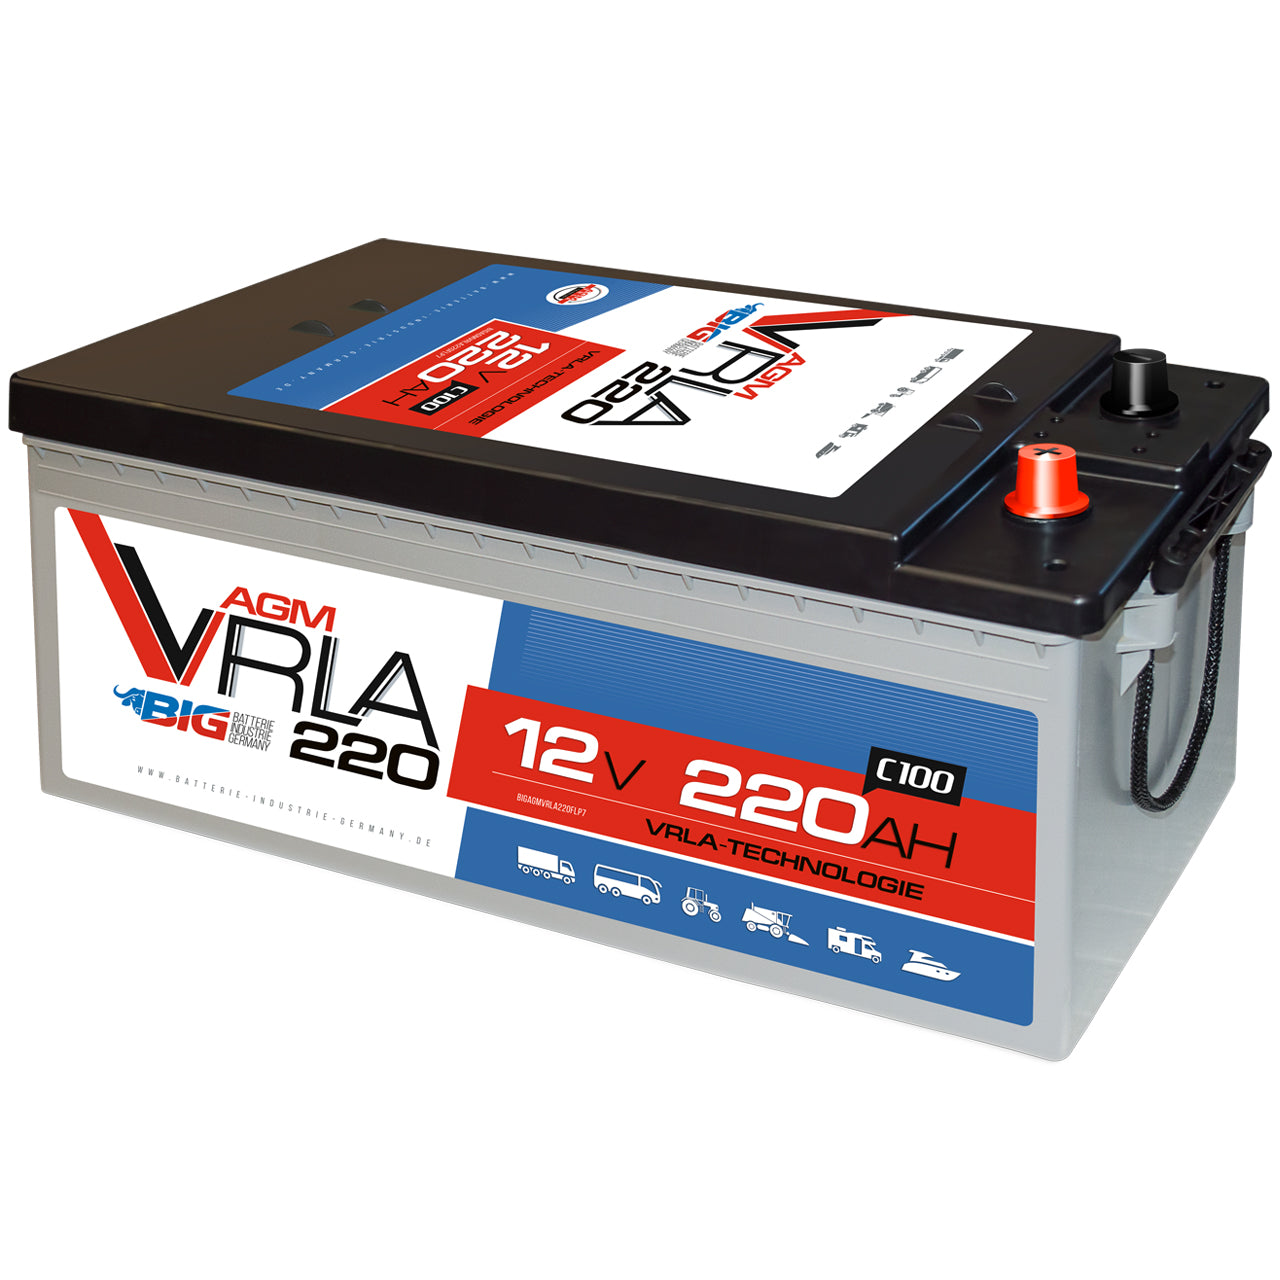 Komplettpaket 320W flexibel mit Batterie 220Ah und 2000W-Wechselrichter